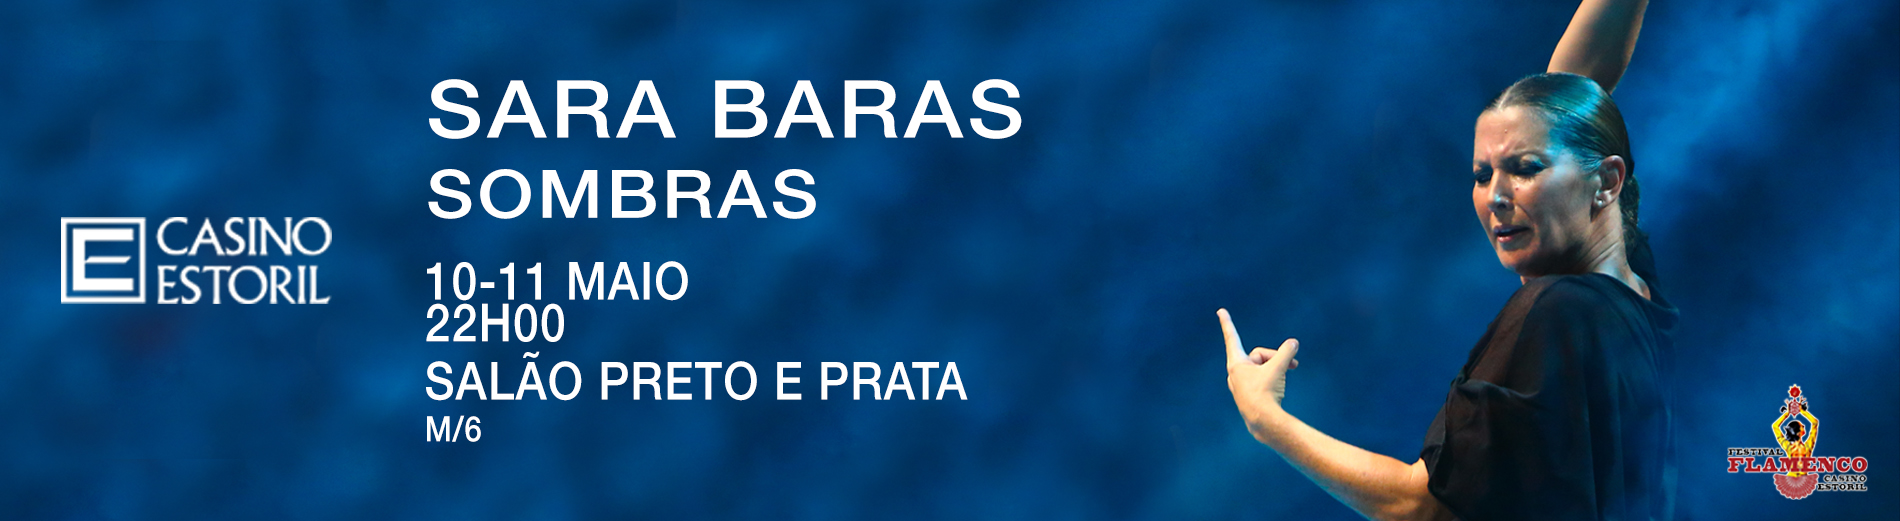 Sara Baras Casino Estoril